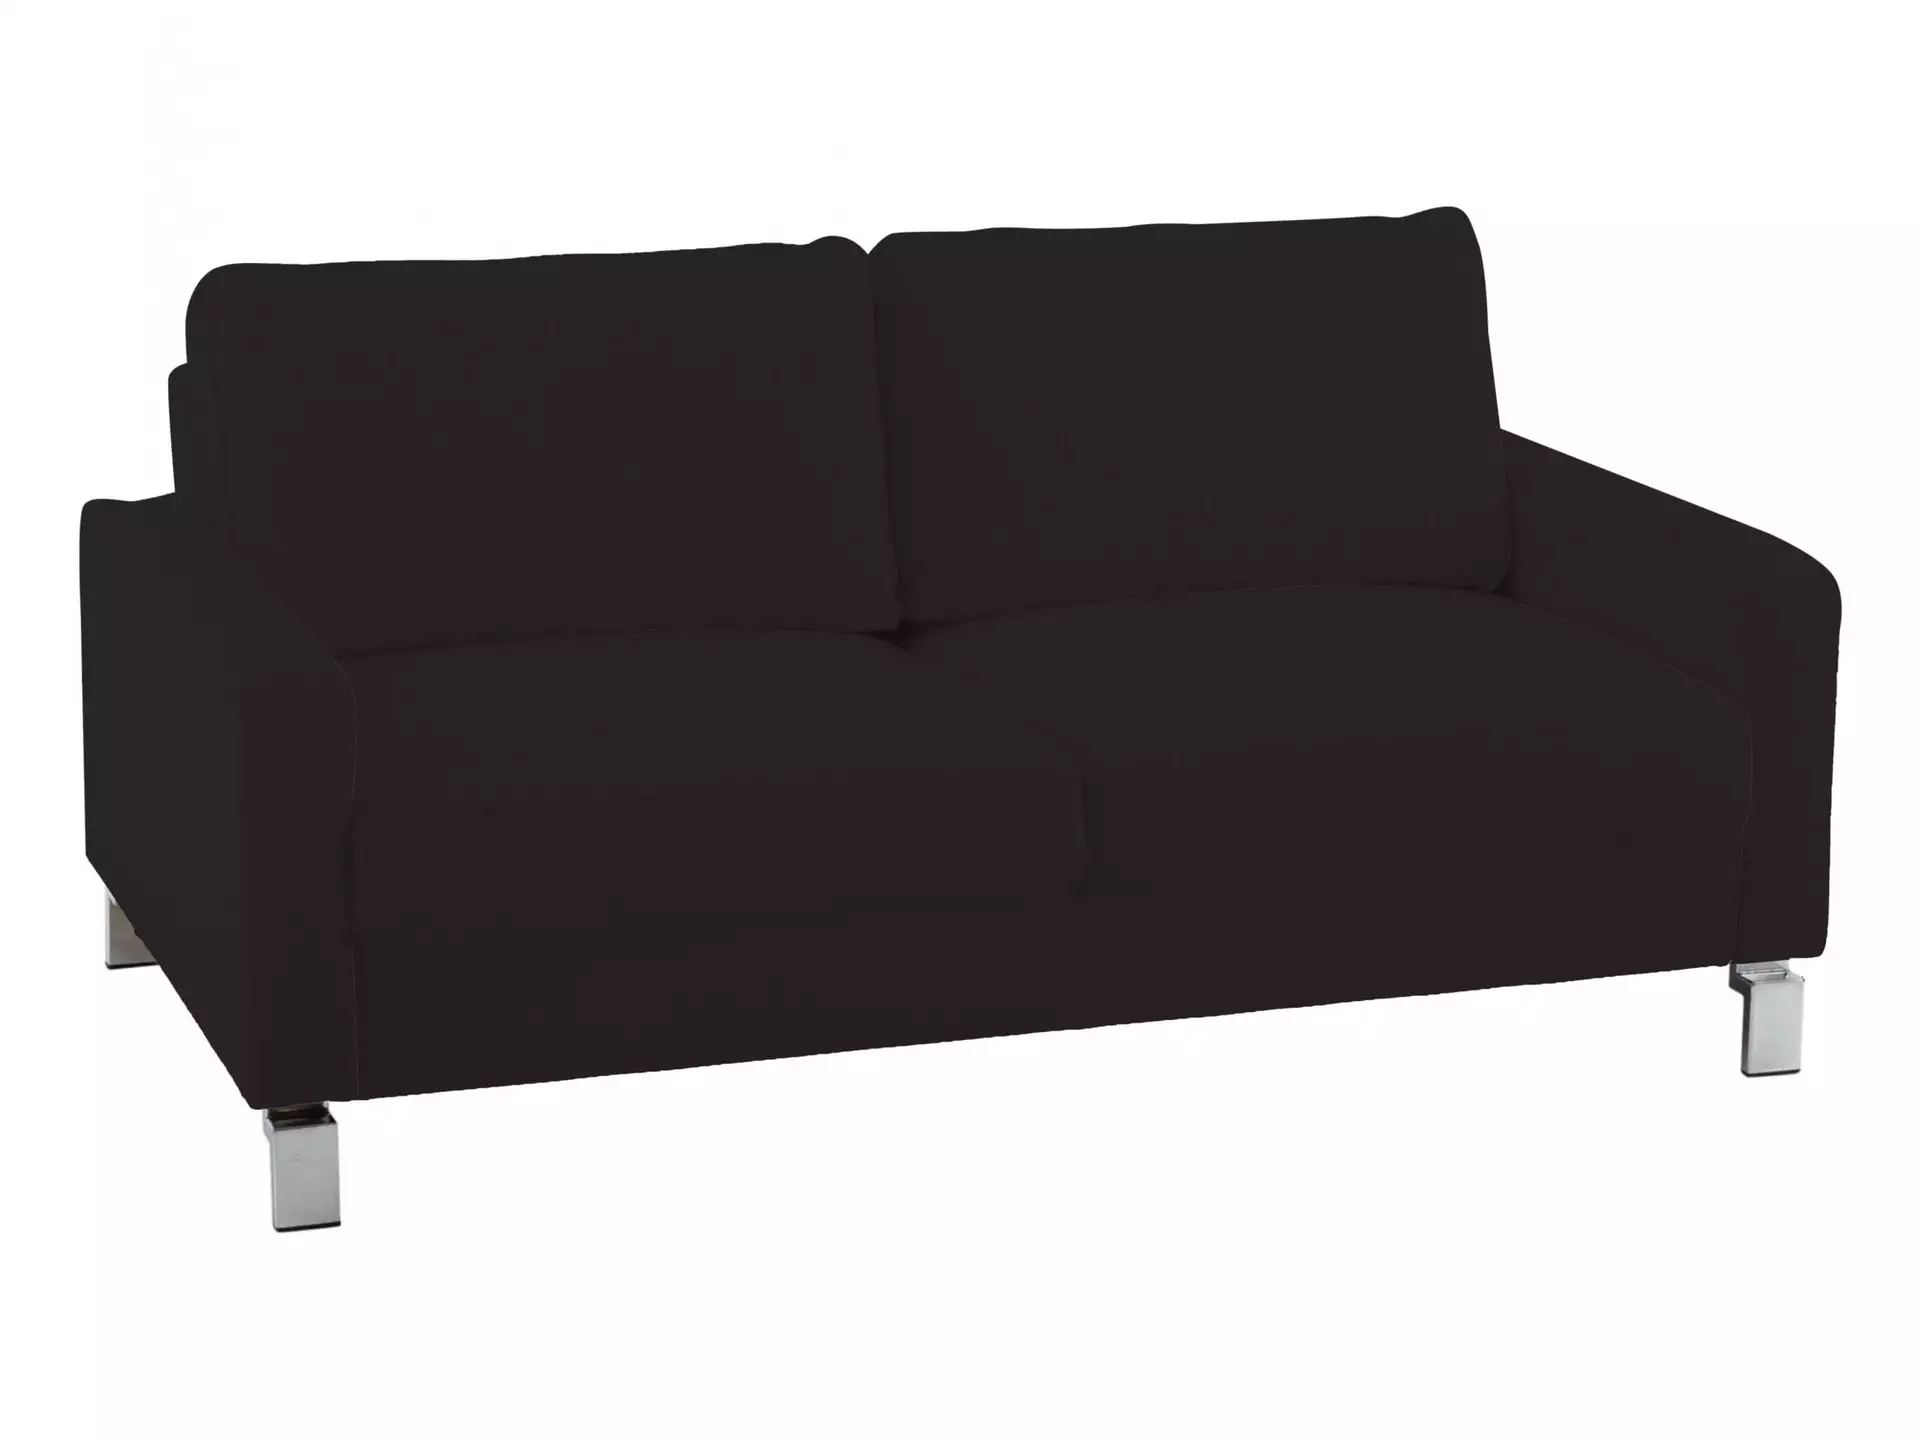 Sofa Interims Basic B: 164 cm Candy / Farbe: Schwarz / Material: Leder Basic